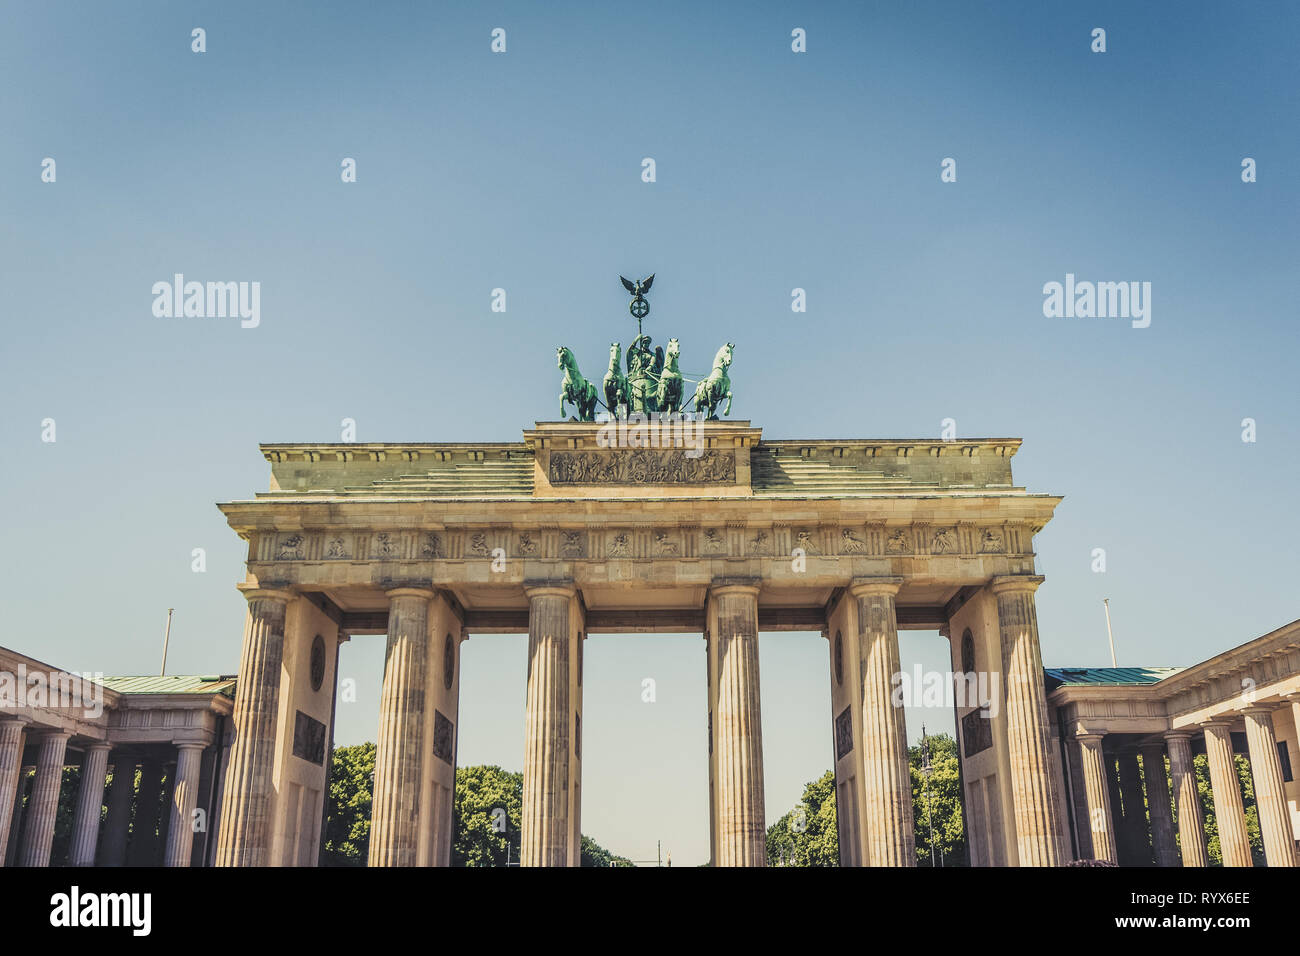 Berlino, Germania - Giugno 2015: Il Brandenburger Tor (Porta di Brandeburgo a Berlino Germania Foto Stock